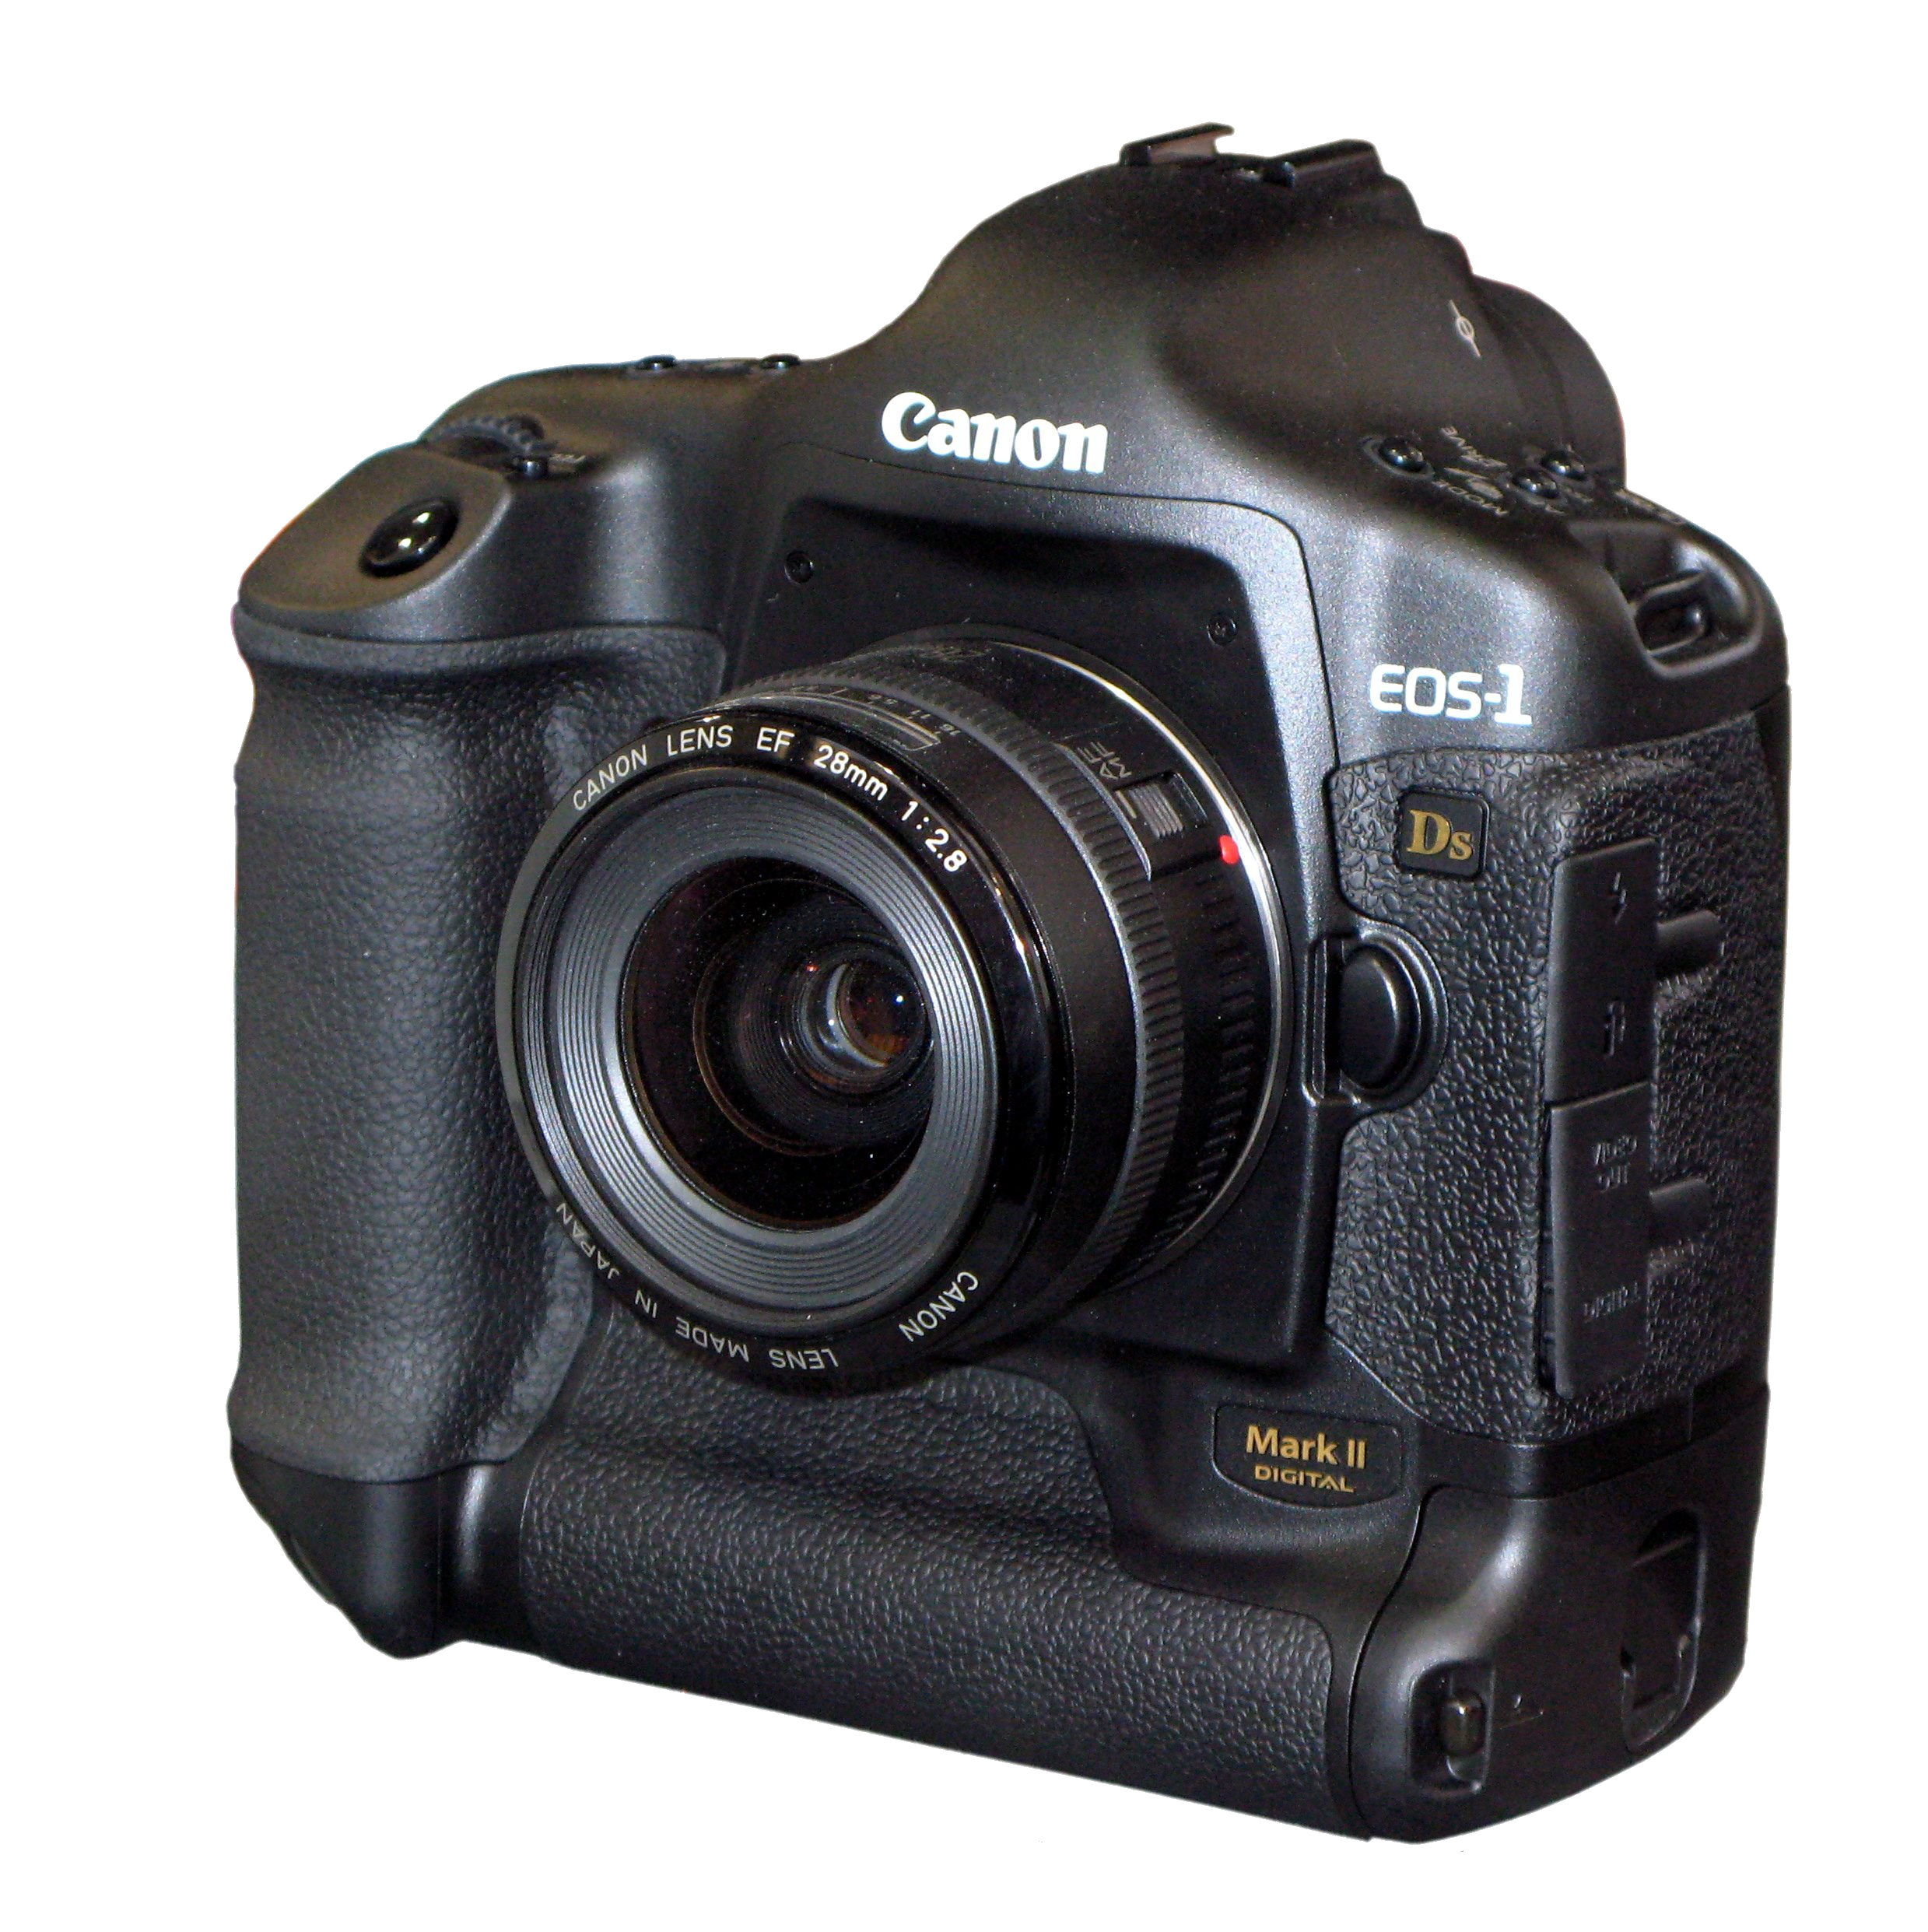 1ds mark. Canon 1ds Mark II. Canon EOS-1ds Mark II. Canon 1d Mark III. Canon EOS-1.